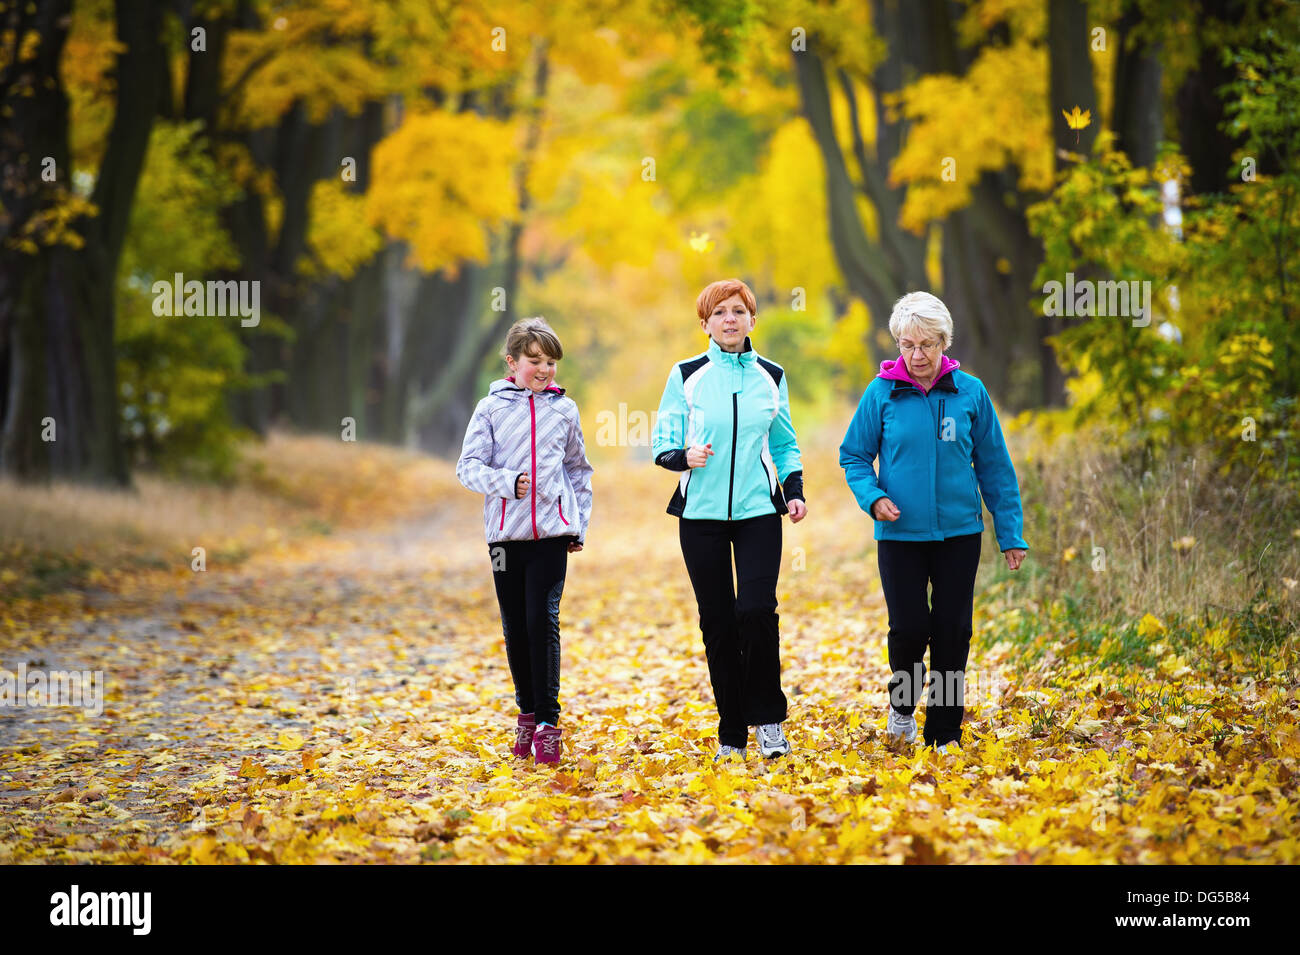 Three generations of women running in park Stock Photo